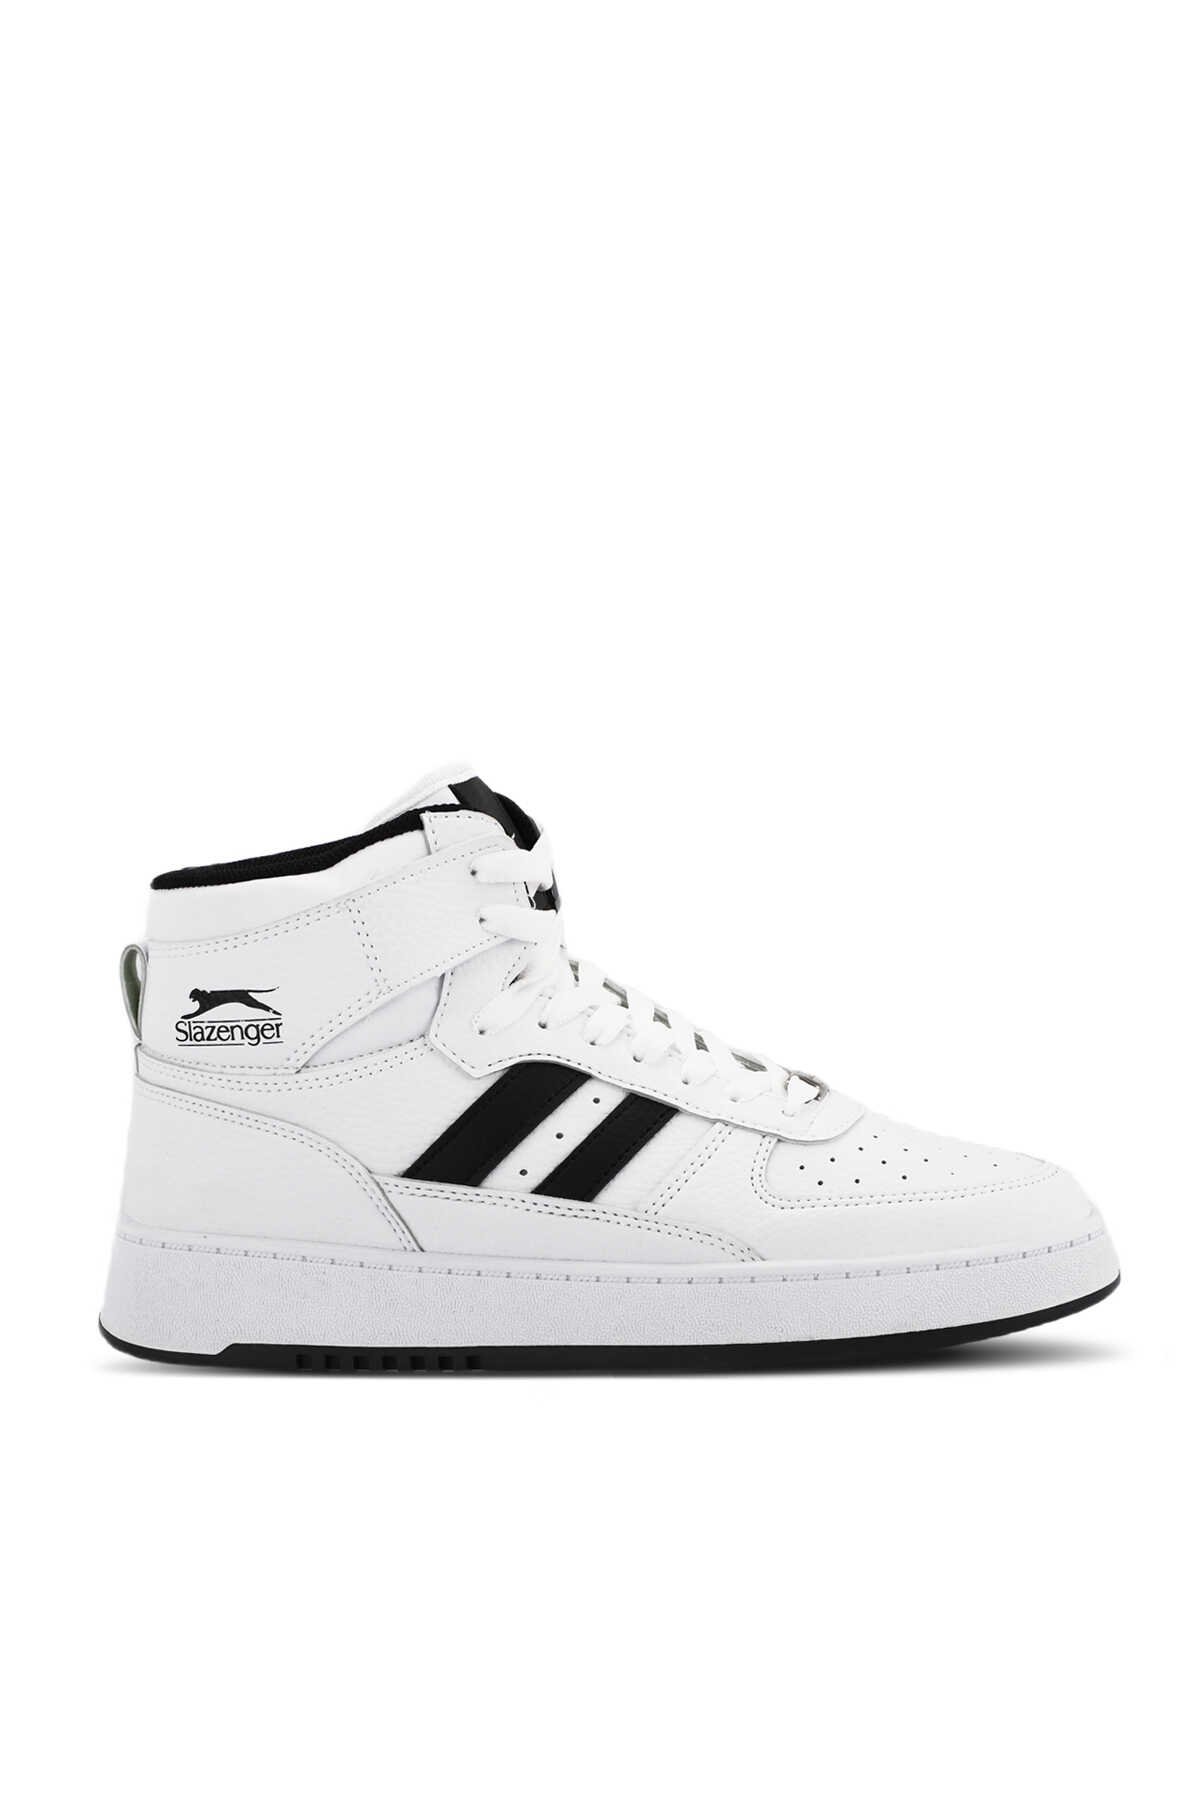 Slazenger - Slazenger DAPHNE HIGH Sneaker Kadın Ayakkabı Beyaz / Siyah